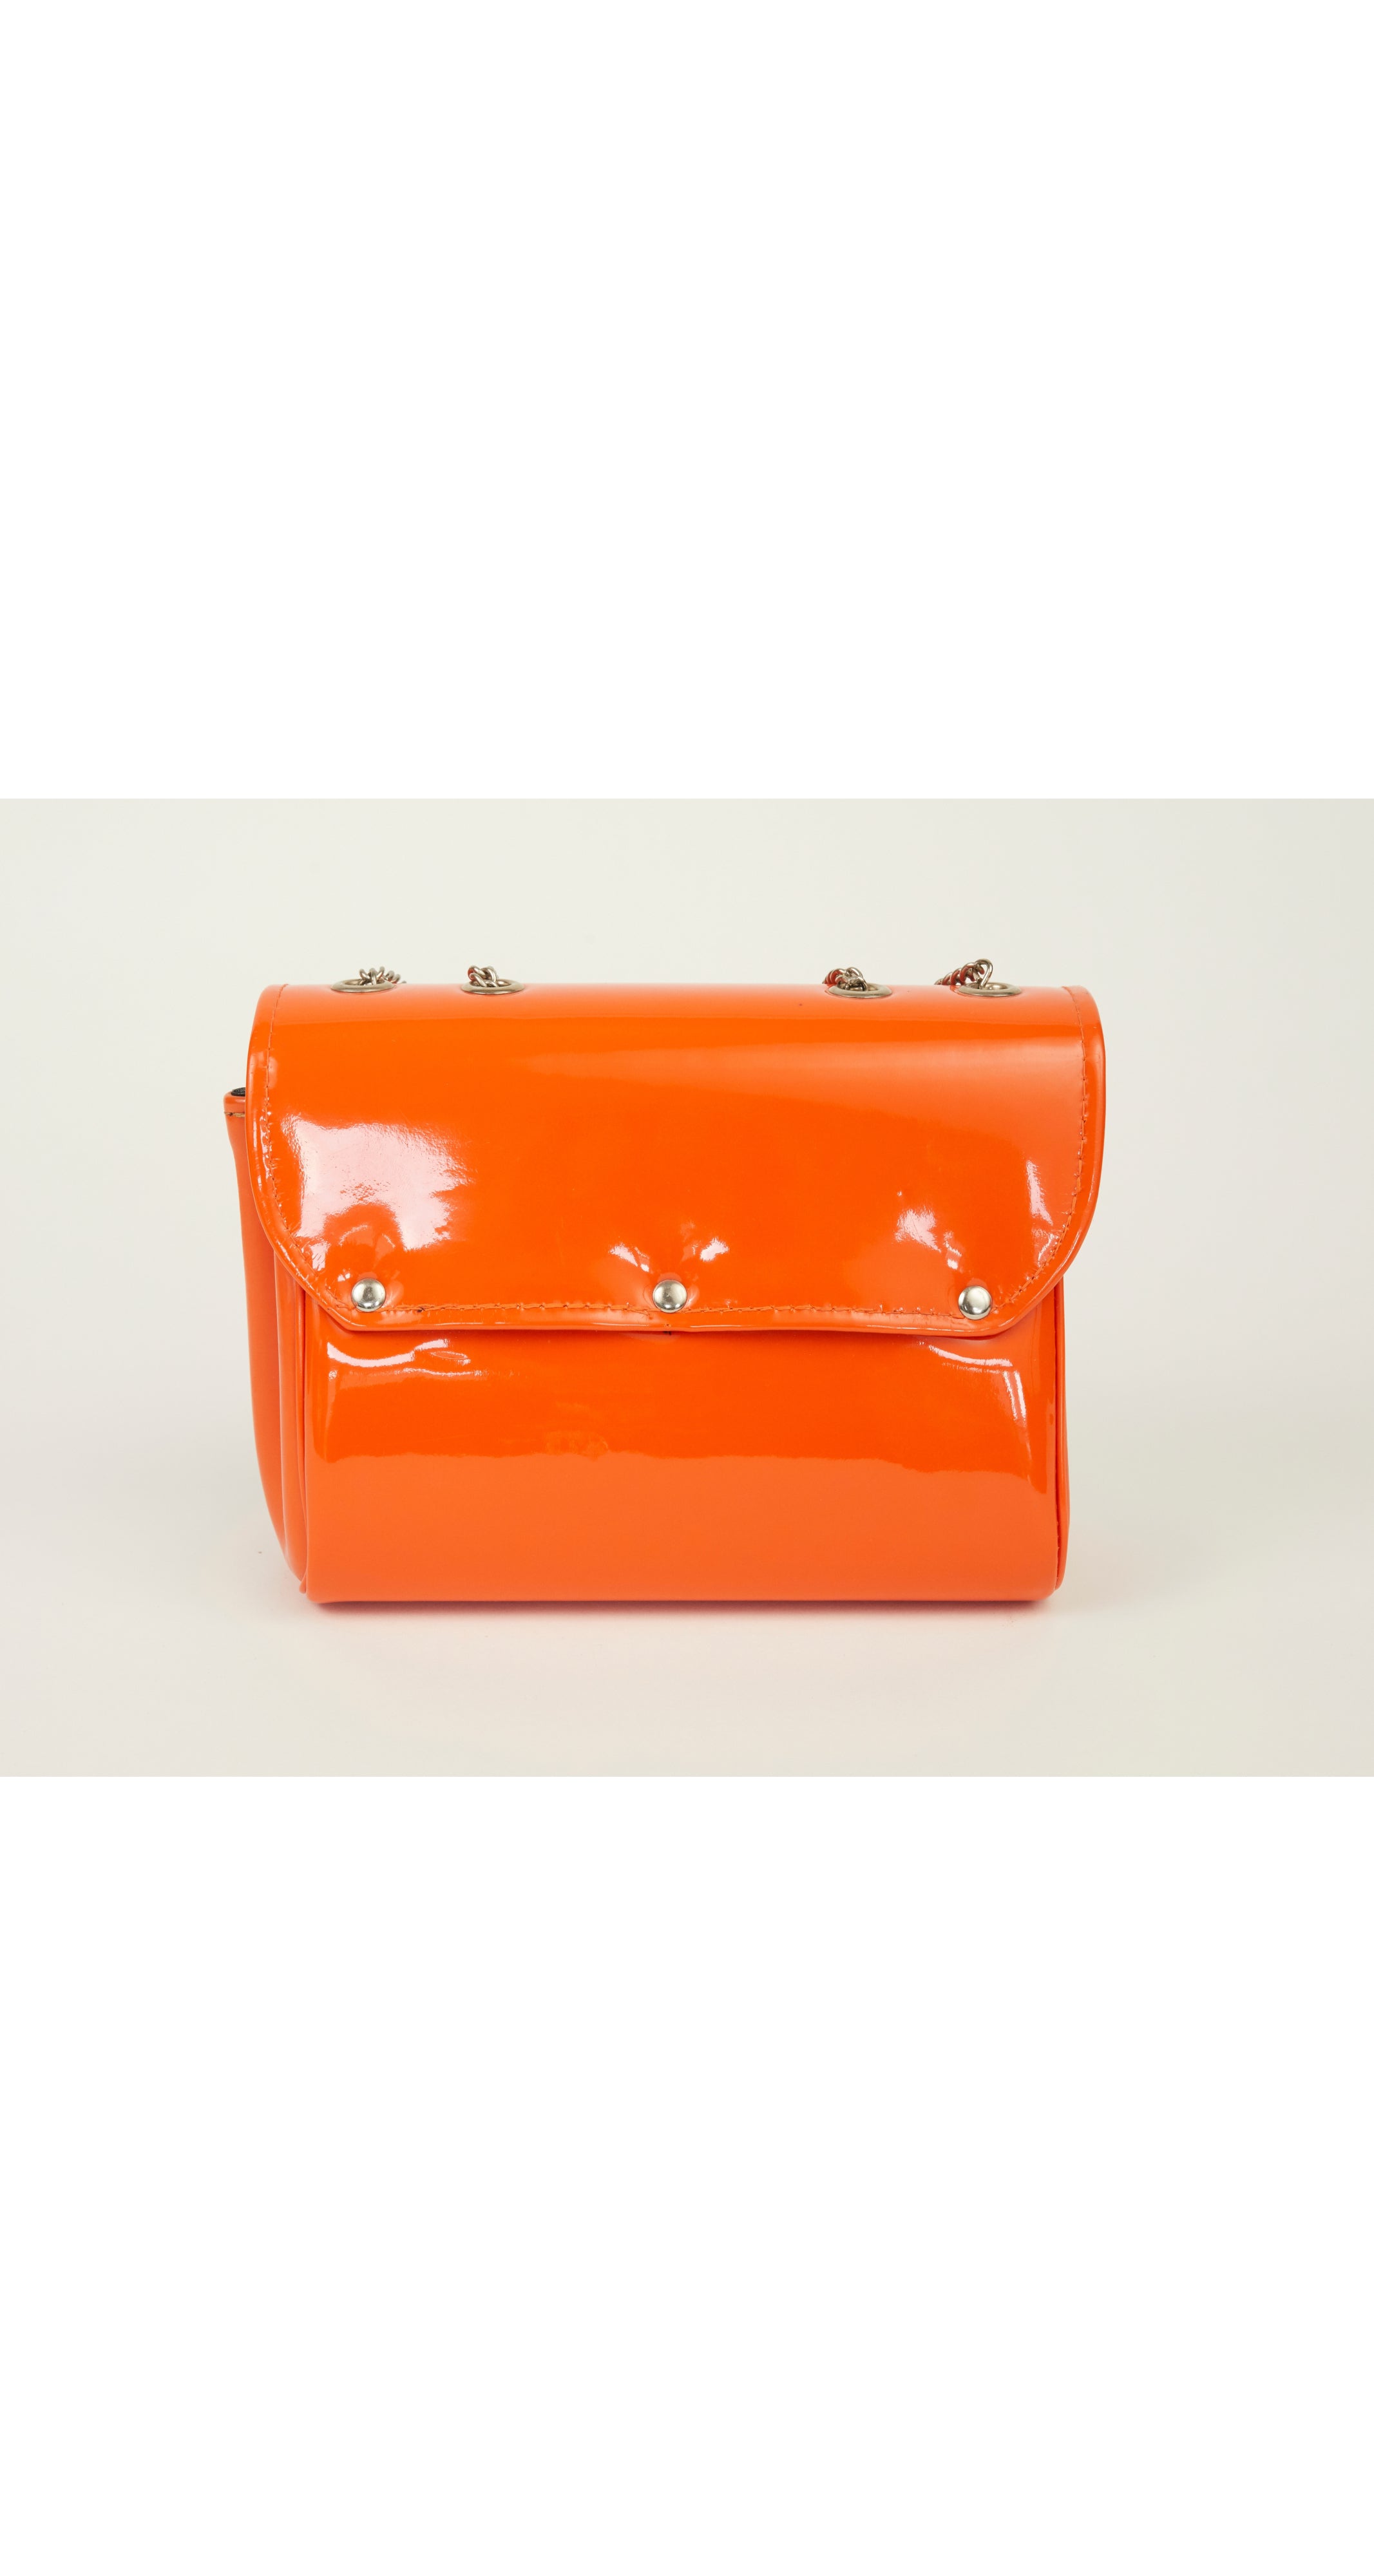 1960s Mod Orange Vinyl & Silver Handbag